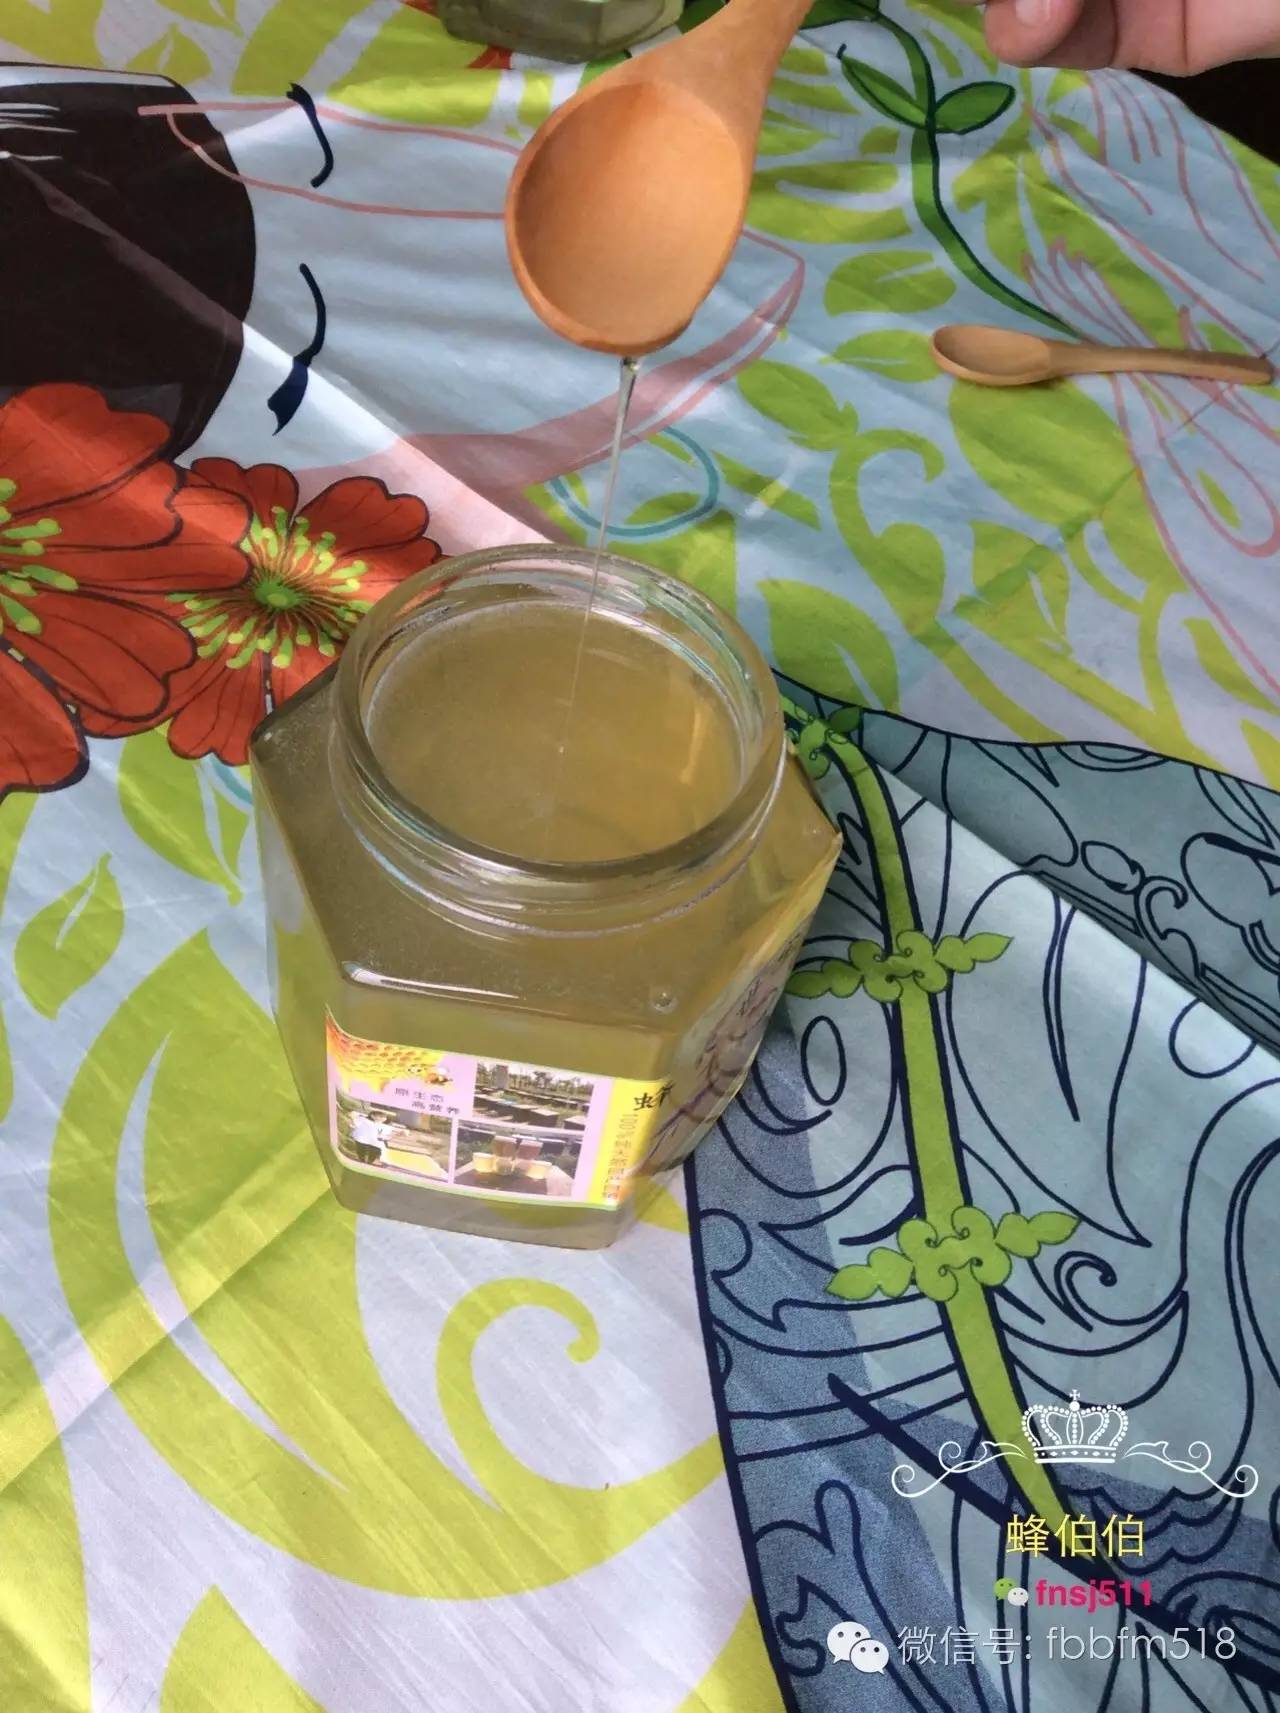 白醋加蜂蜜 蜂蜜真假视频 大蒜泡蜂蜜的功效 洋槐蜂蜜膏 蜂蜜泡花生功效和作用